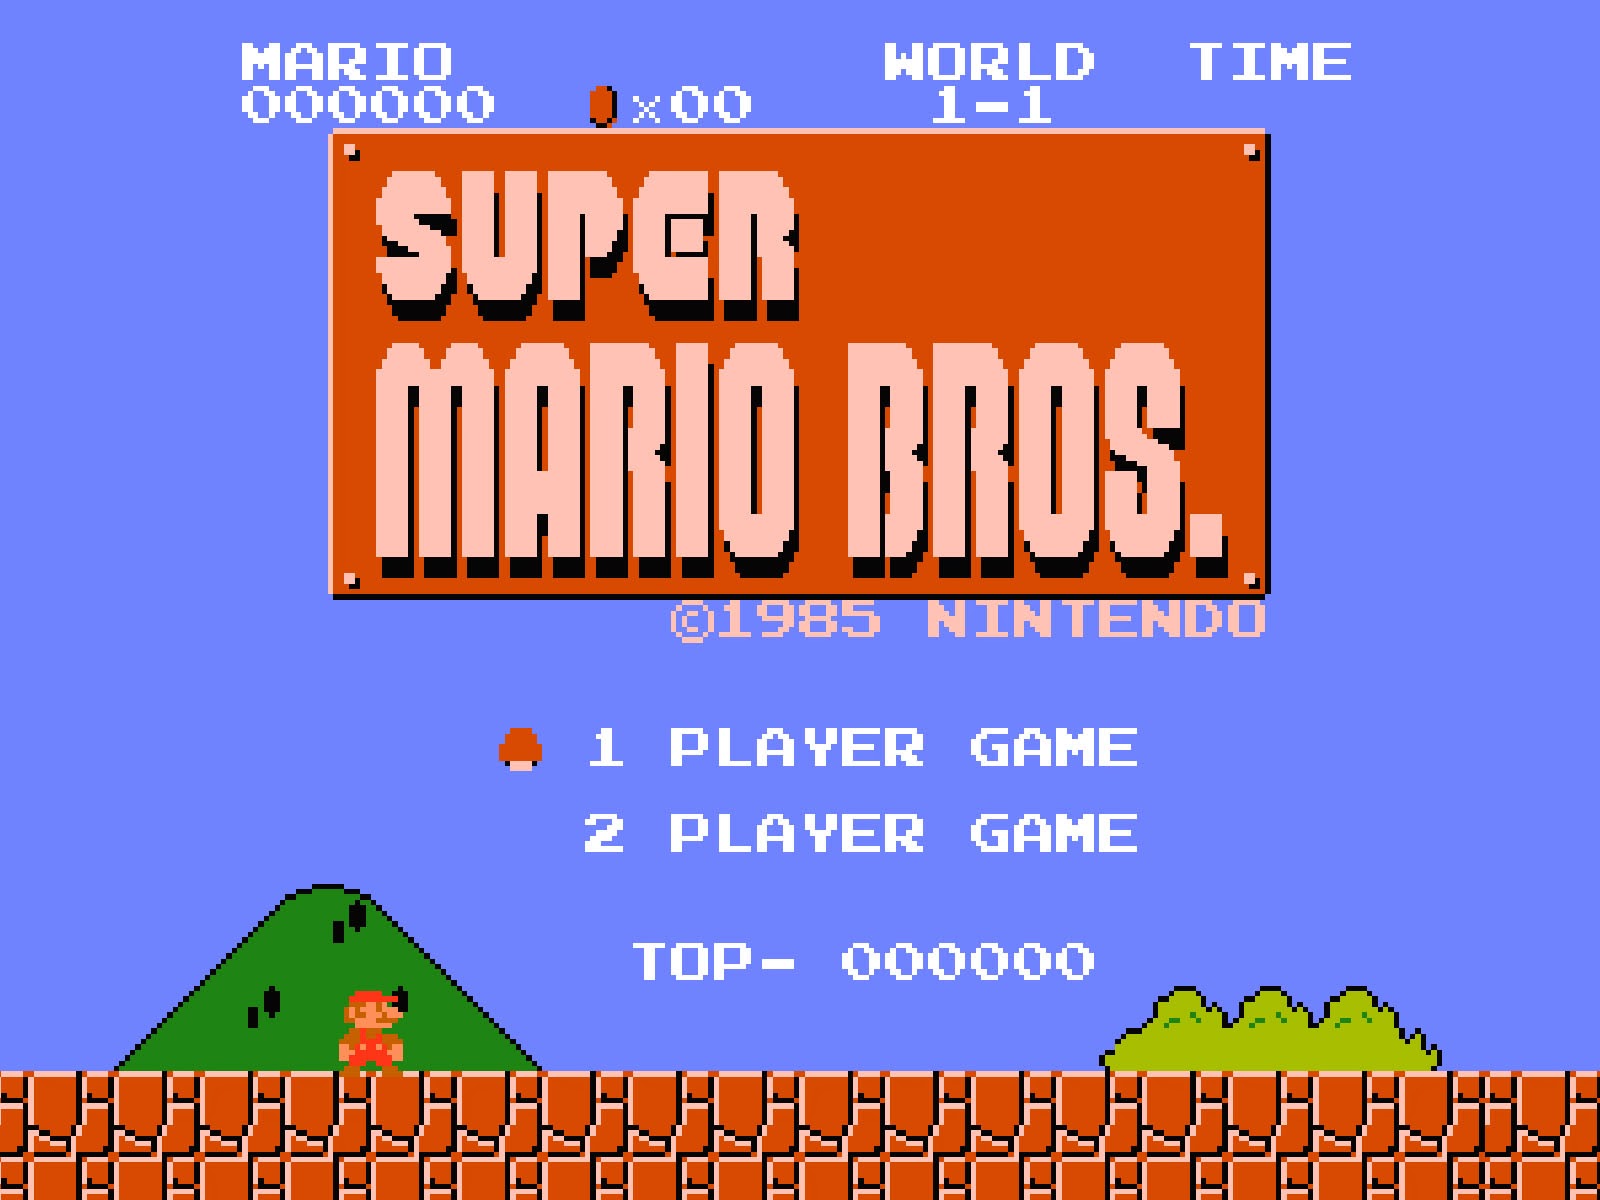 Wahoo! Confira quais jogos clássicos do Mario foram adicionados